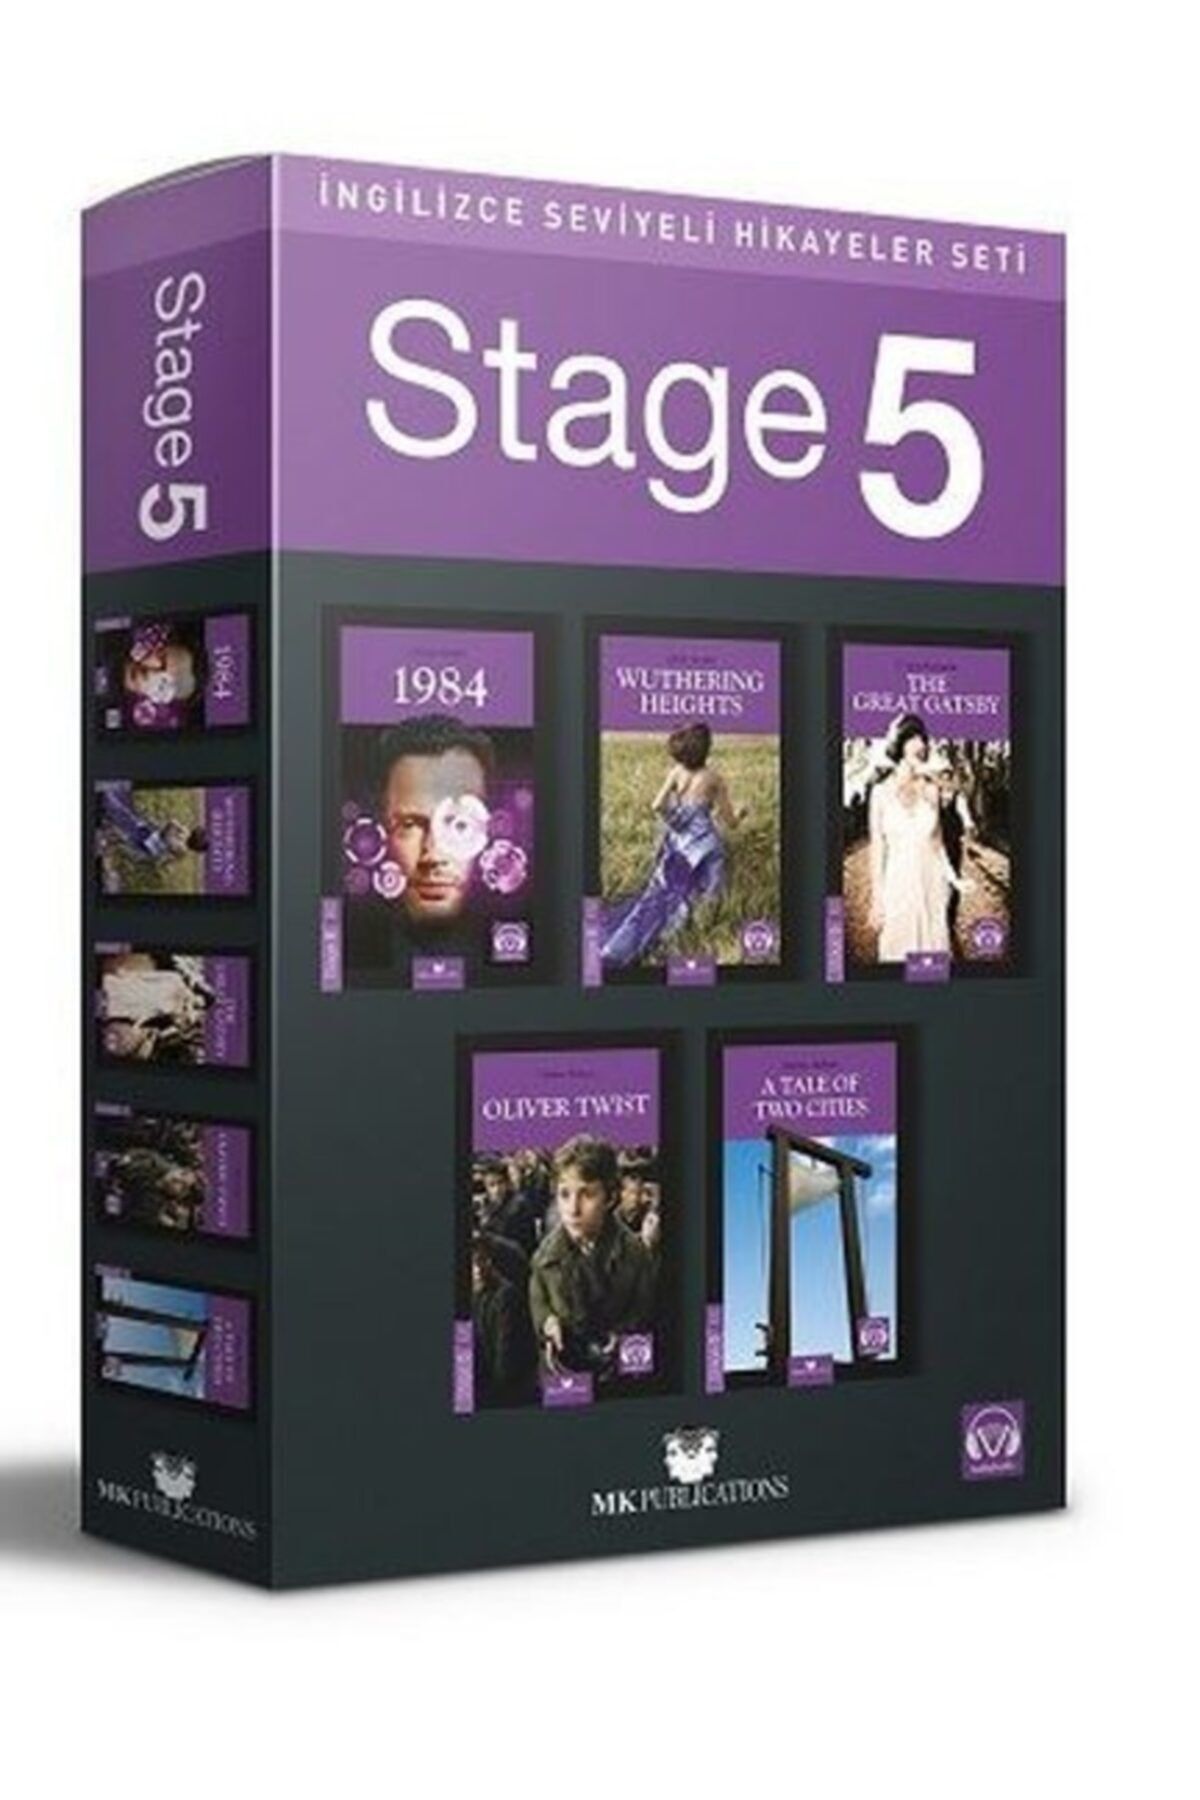 MK Publications Ingilizce Hikaye Seti - Stage 5 - 5 Kitap Takım